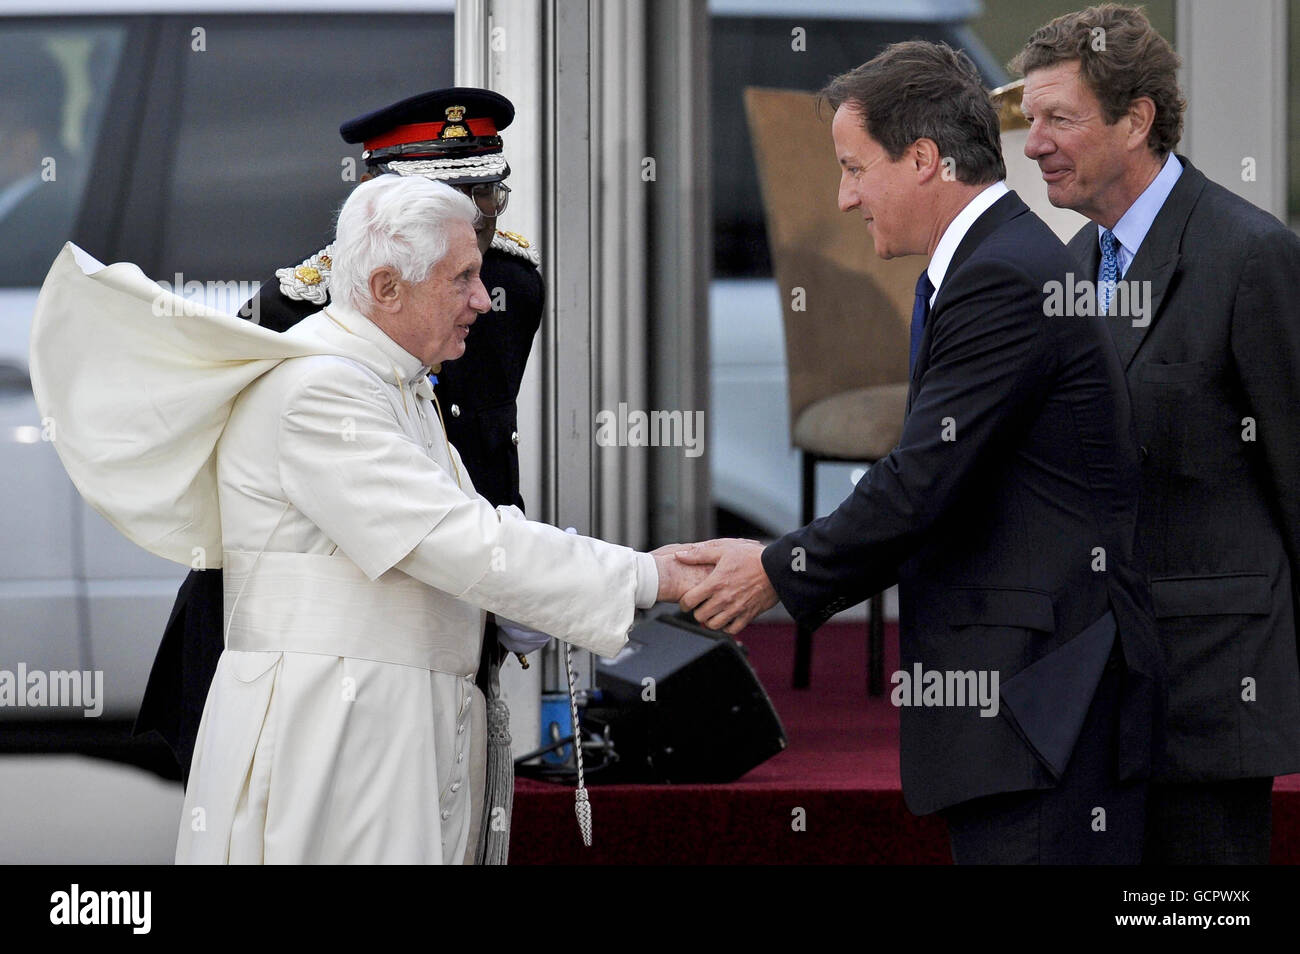 Le Premier ministre David Cameron salue le pape Benoît XVI lorsqu'il arrive à une cérémonie de départ à l'aéroport international de Birmingham le dernier jour de sa visite d'État au Royaume-Uni. Banque D'Images